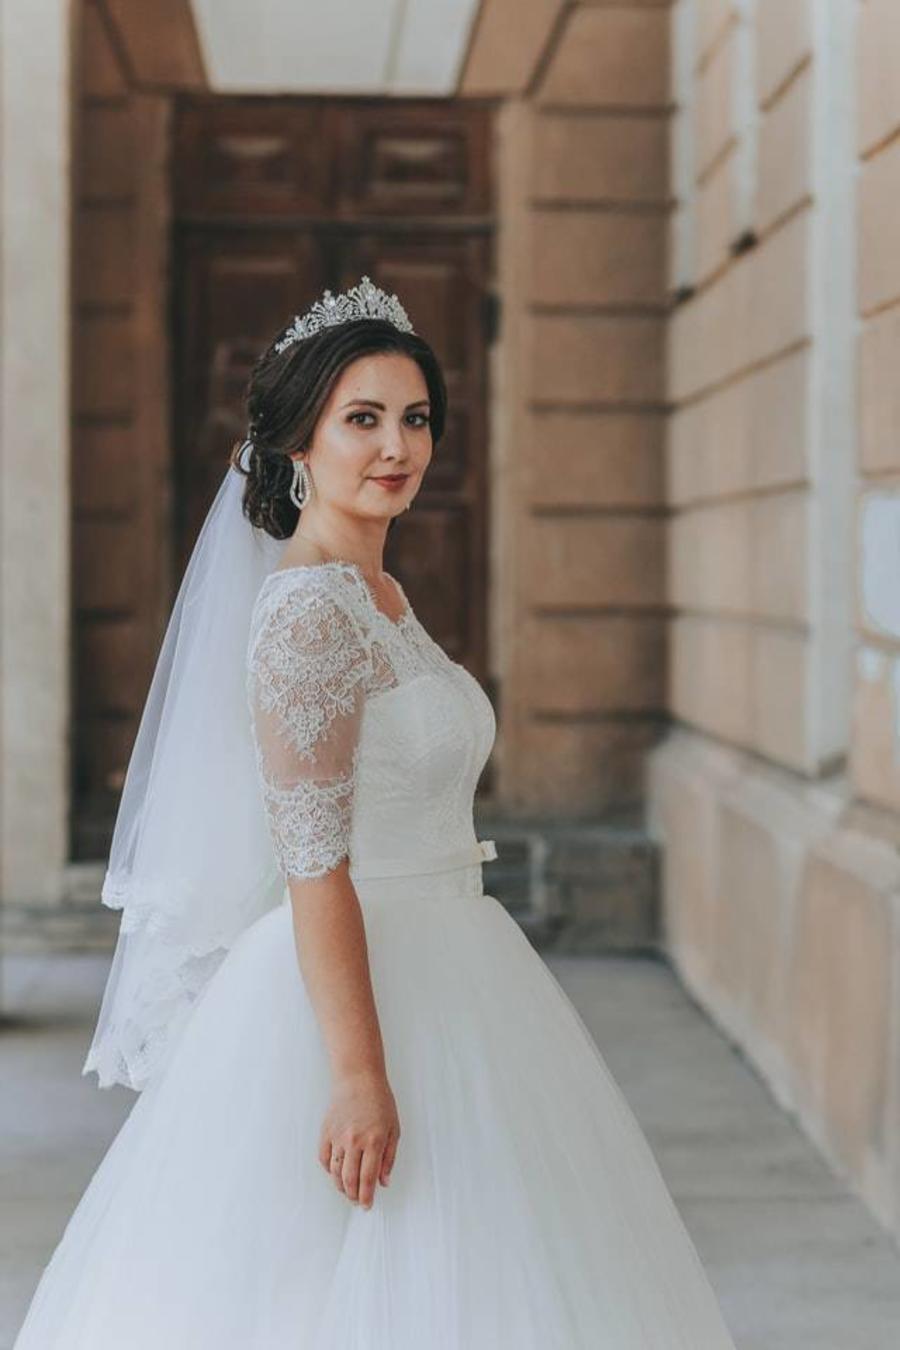 Výklad snu o nošení svatebních šatů pro vdanou ženu | Magazín Madam